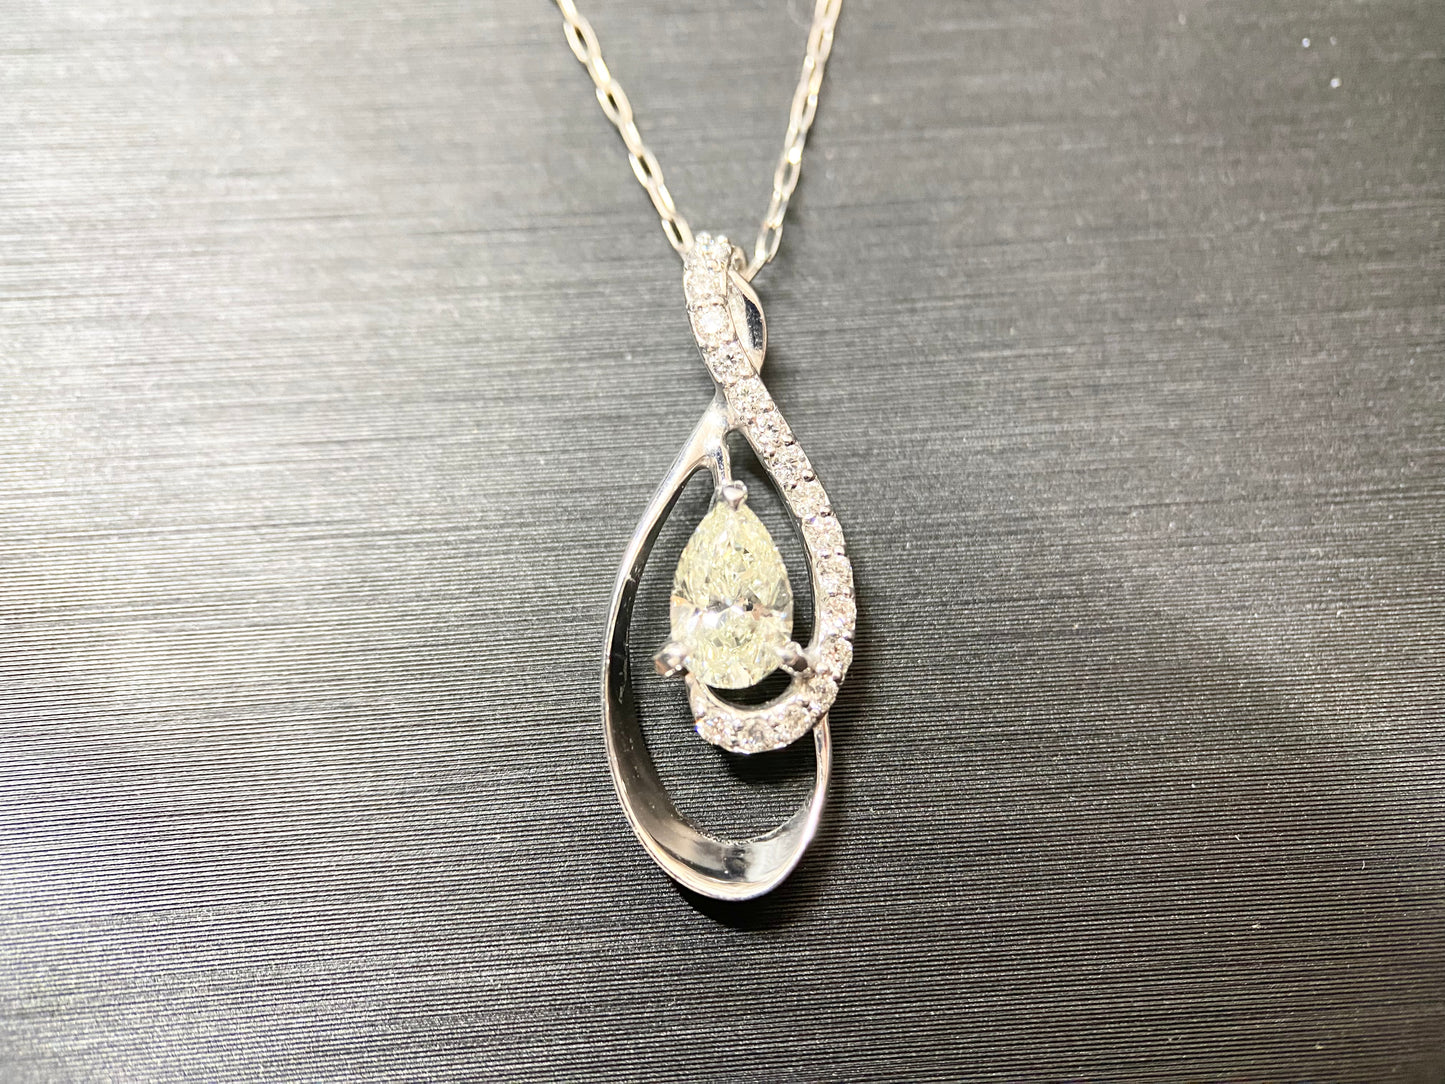 New] [Rare Stone] Brilliant Cut 1 Diamond Necklace Jewelry